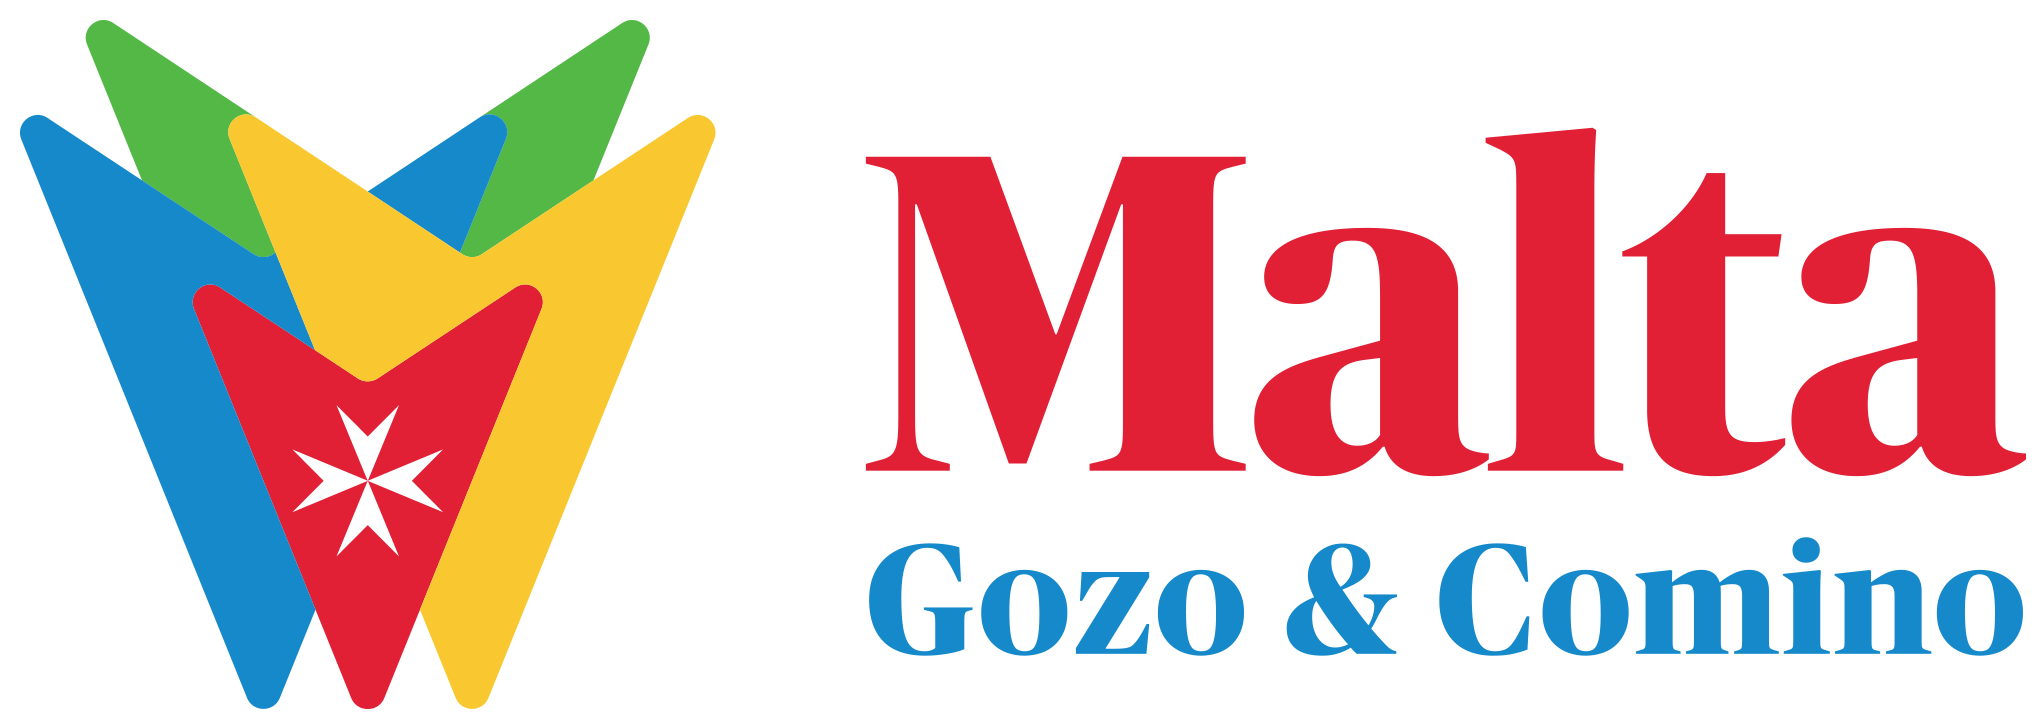 malta tourism logo